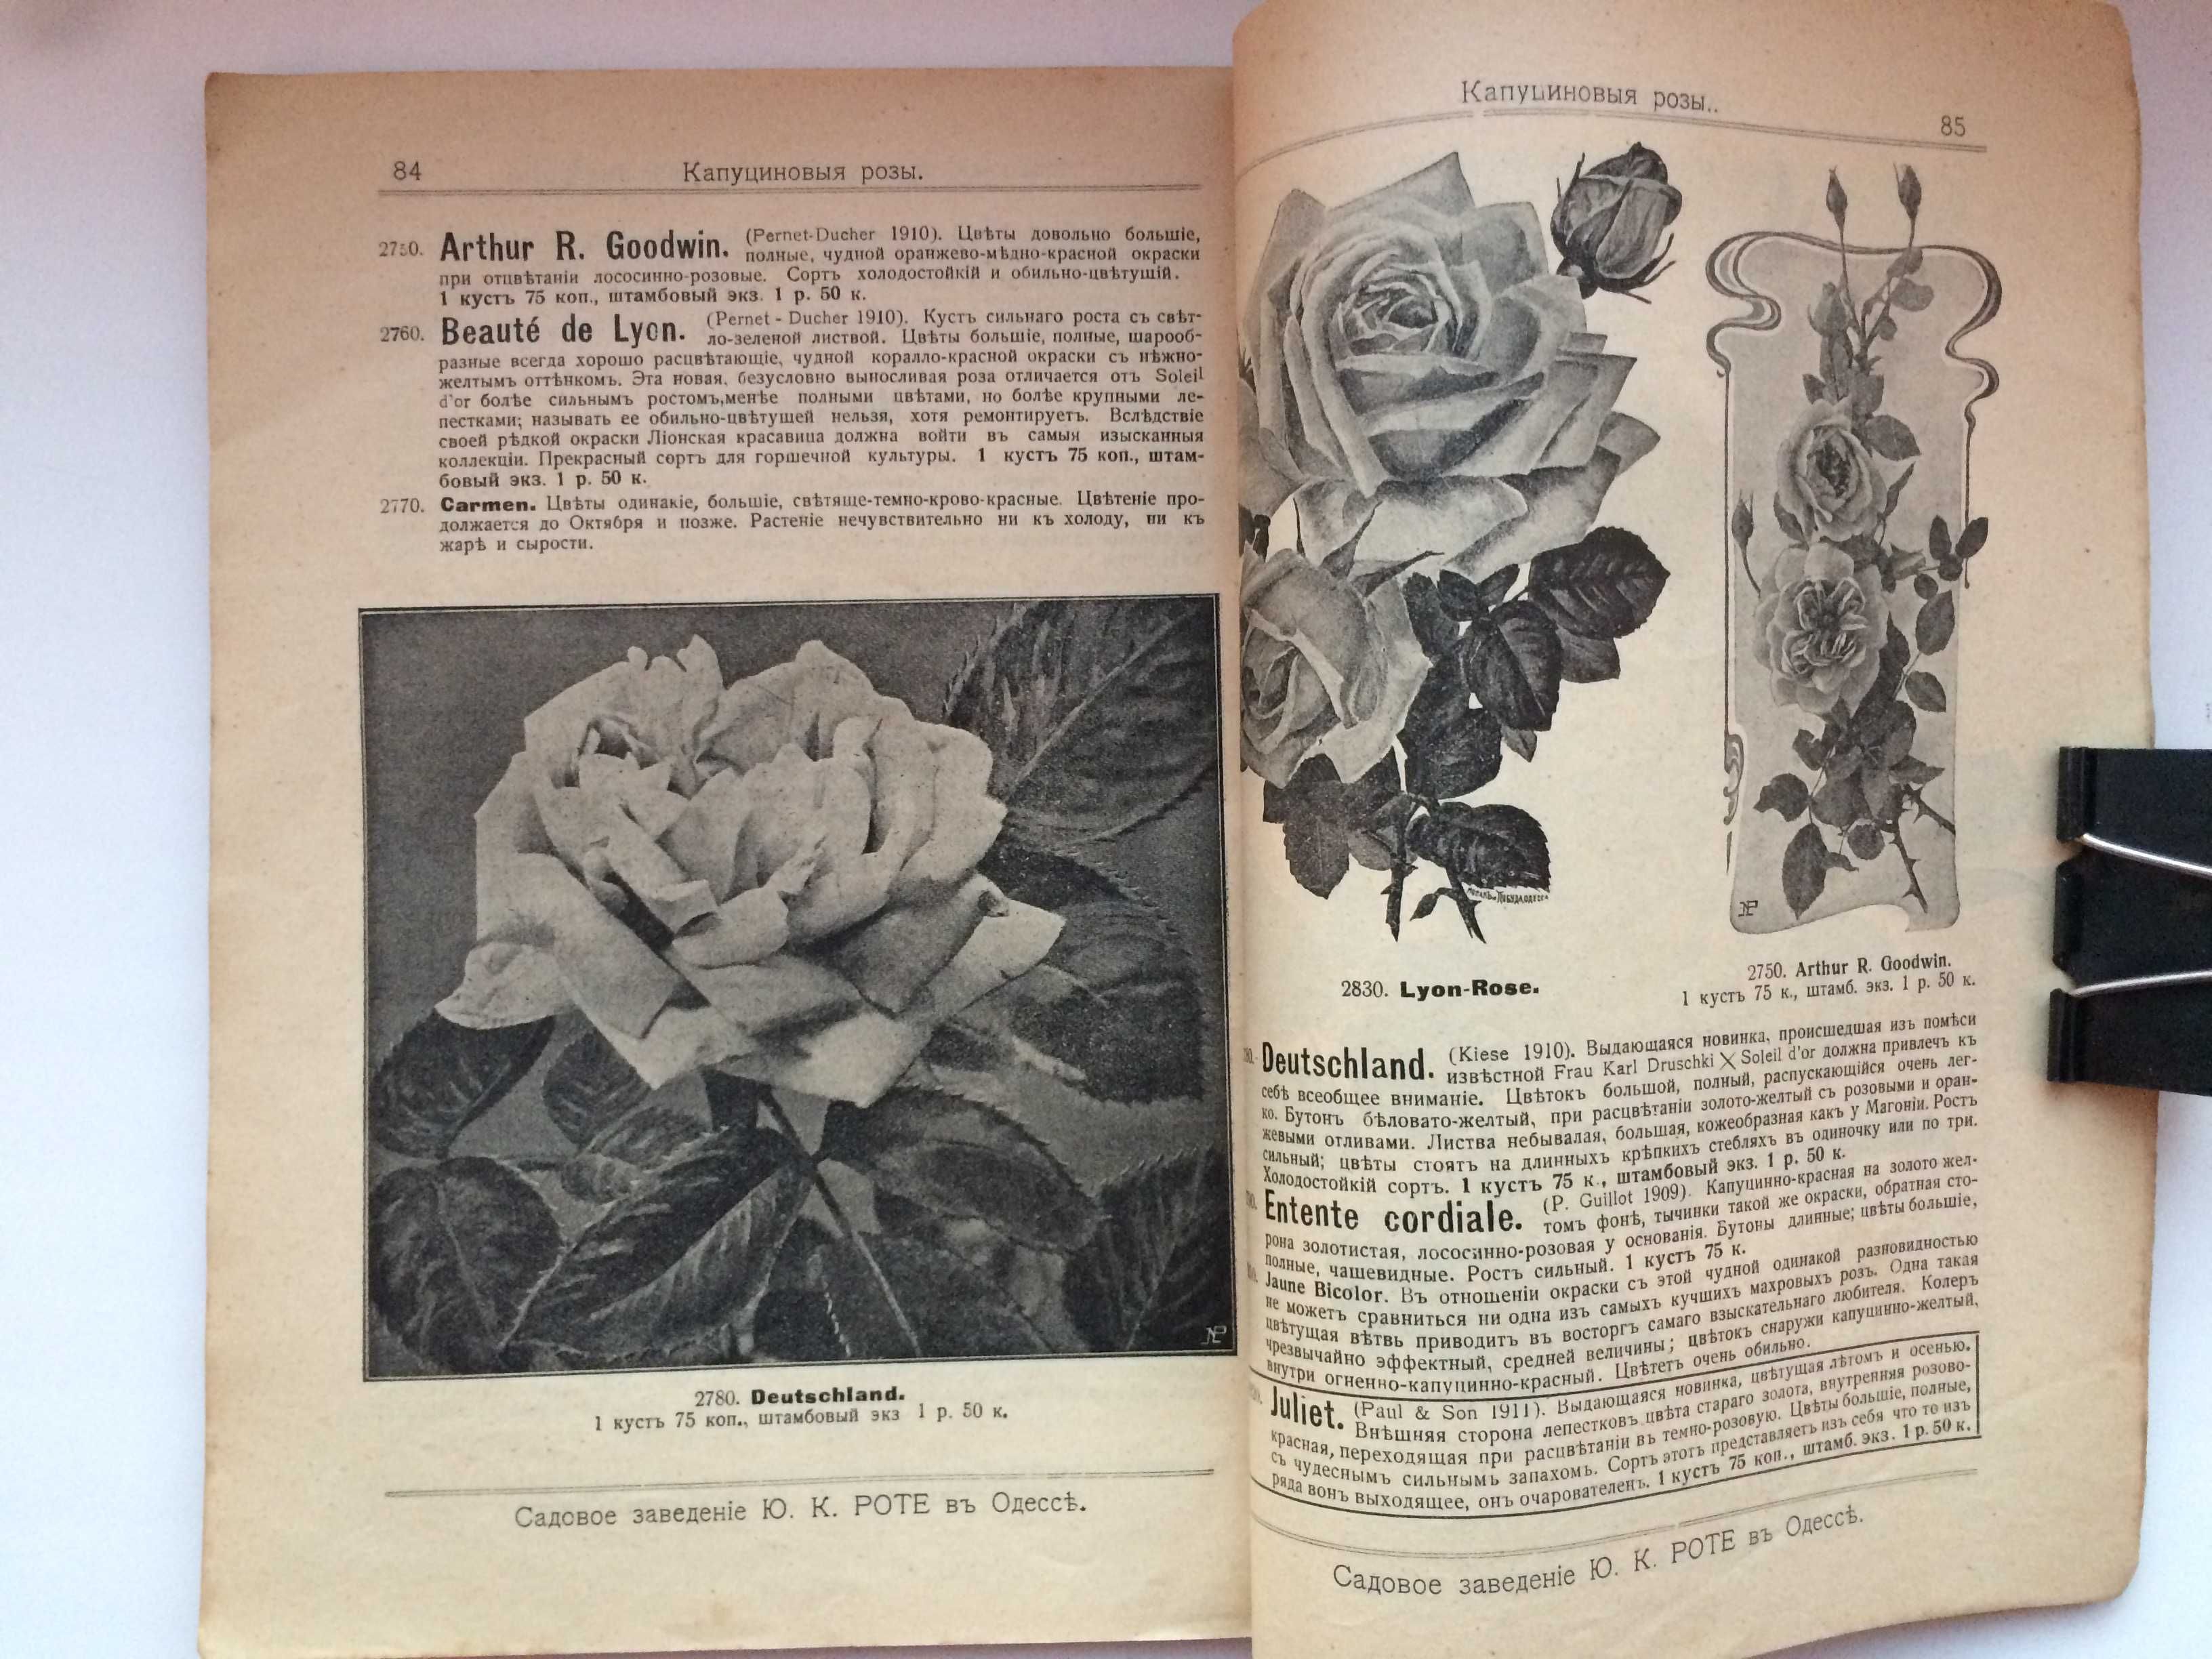 Каталог Роз садового заведения Роте Ю К Одесса 1912 год